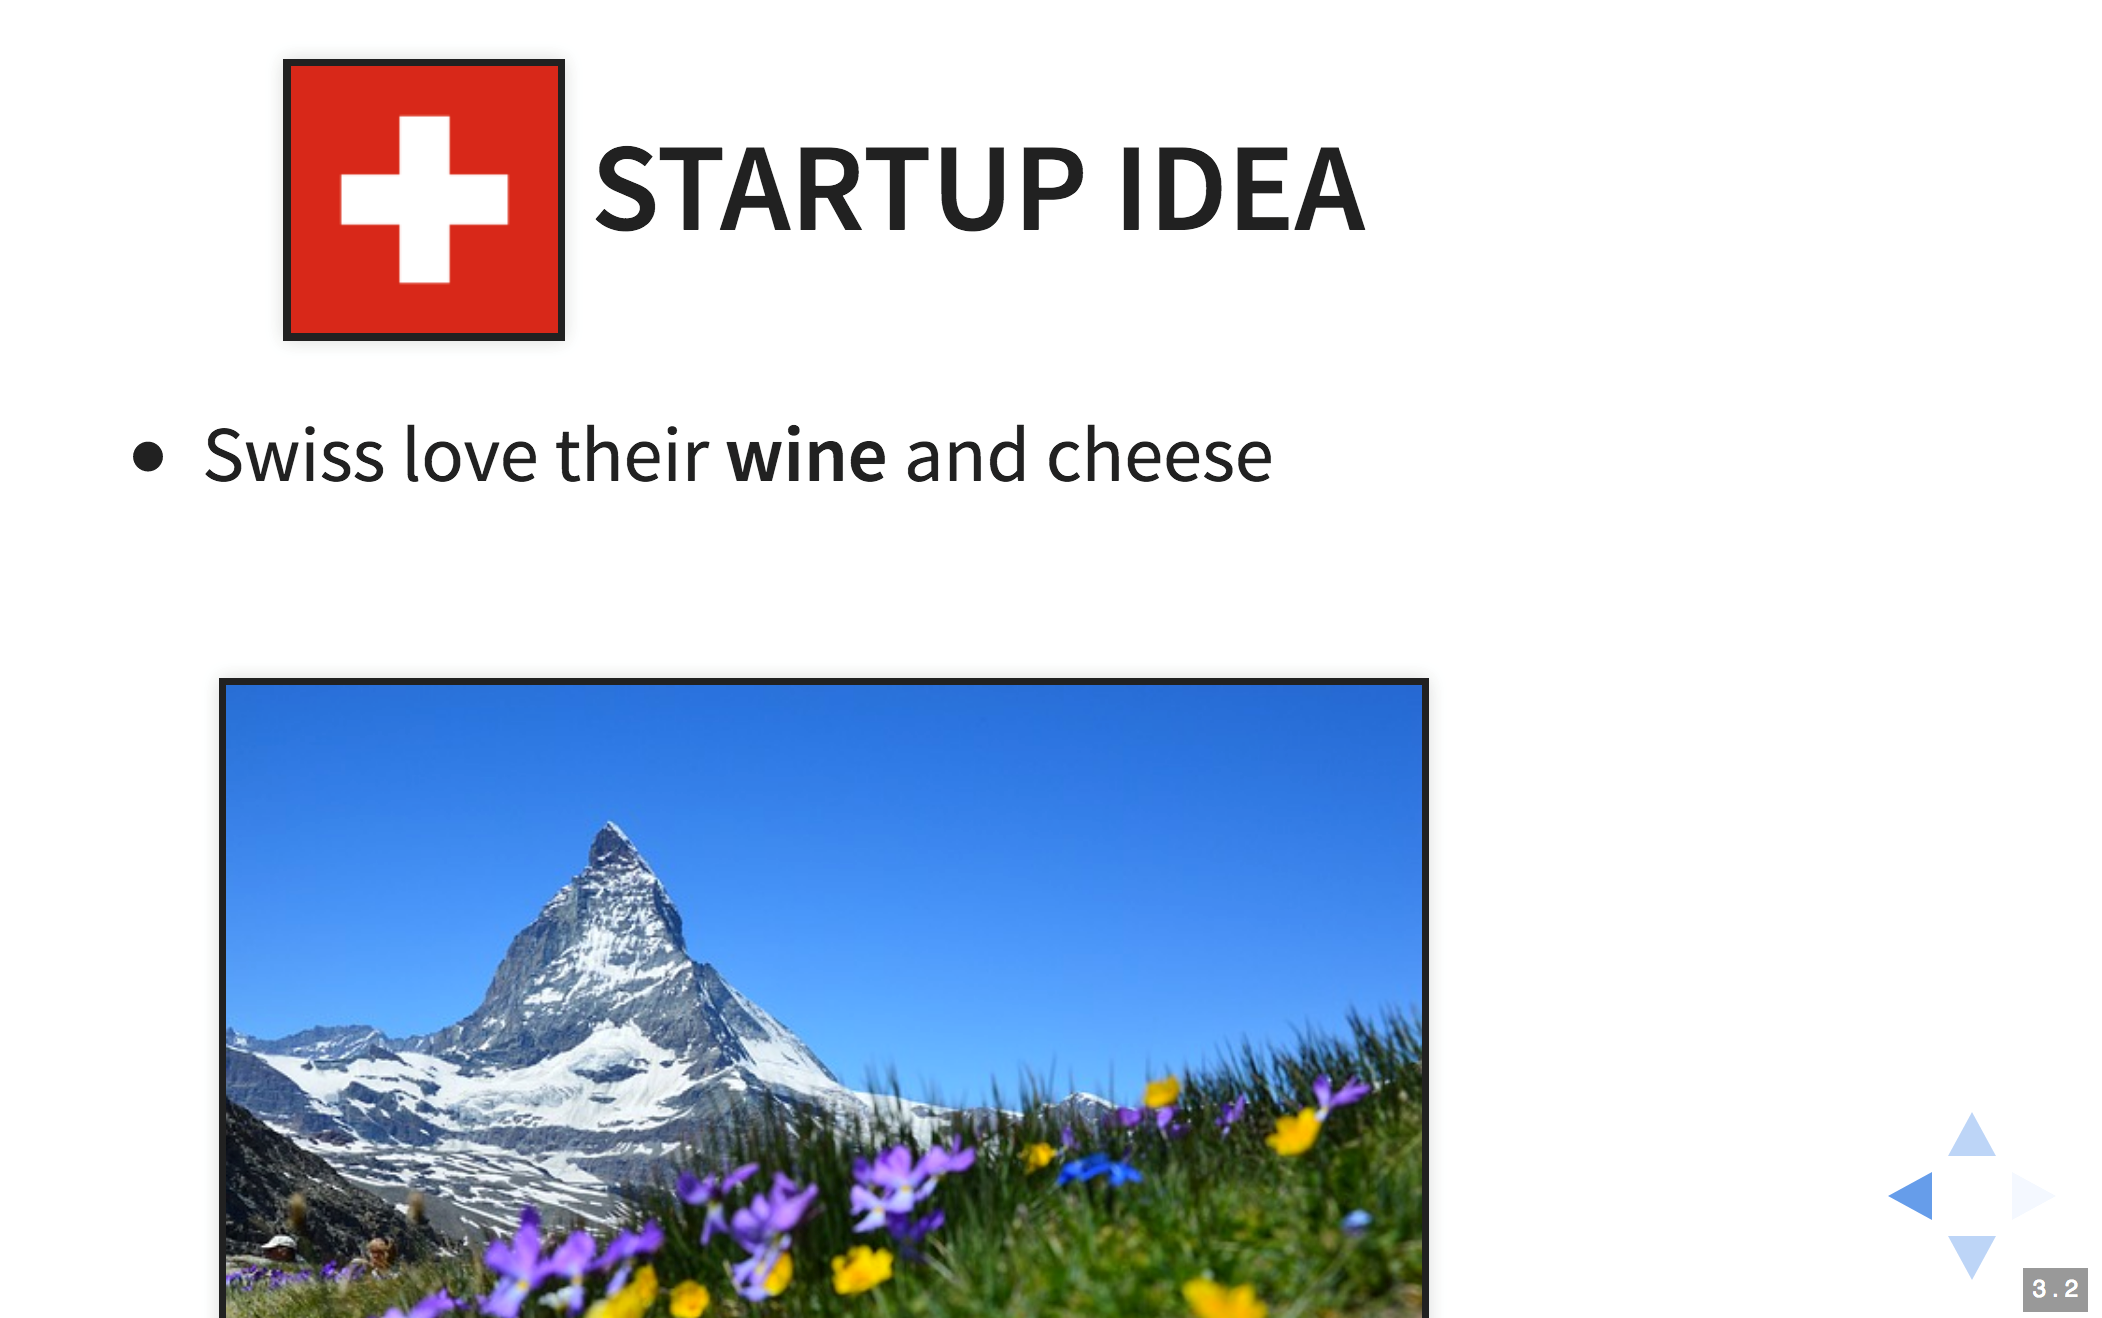 Reveal.js slide with Matterhorn